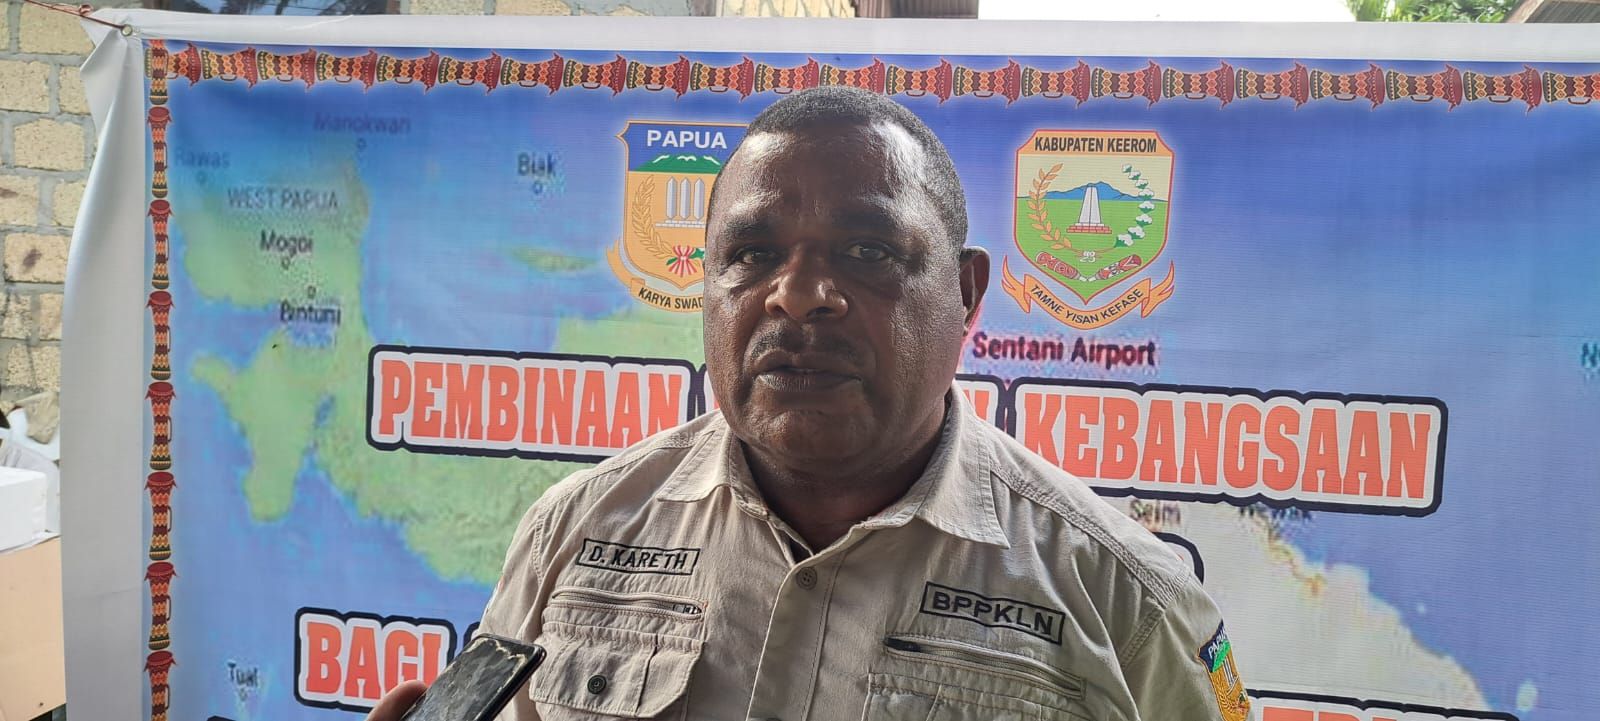 Kepala Bidang Pengelolaan Batas Wilayah Badan Pengelola Perbatasan dan Kerja sama Provinsi Papua, Dolfinus Kareth